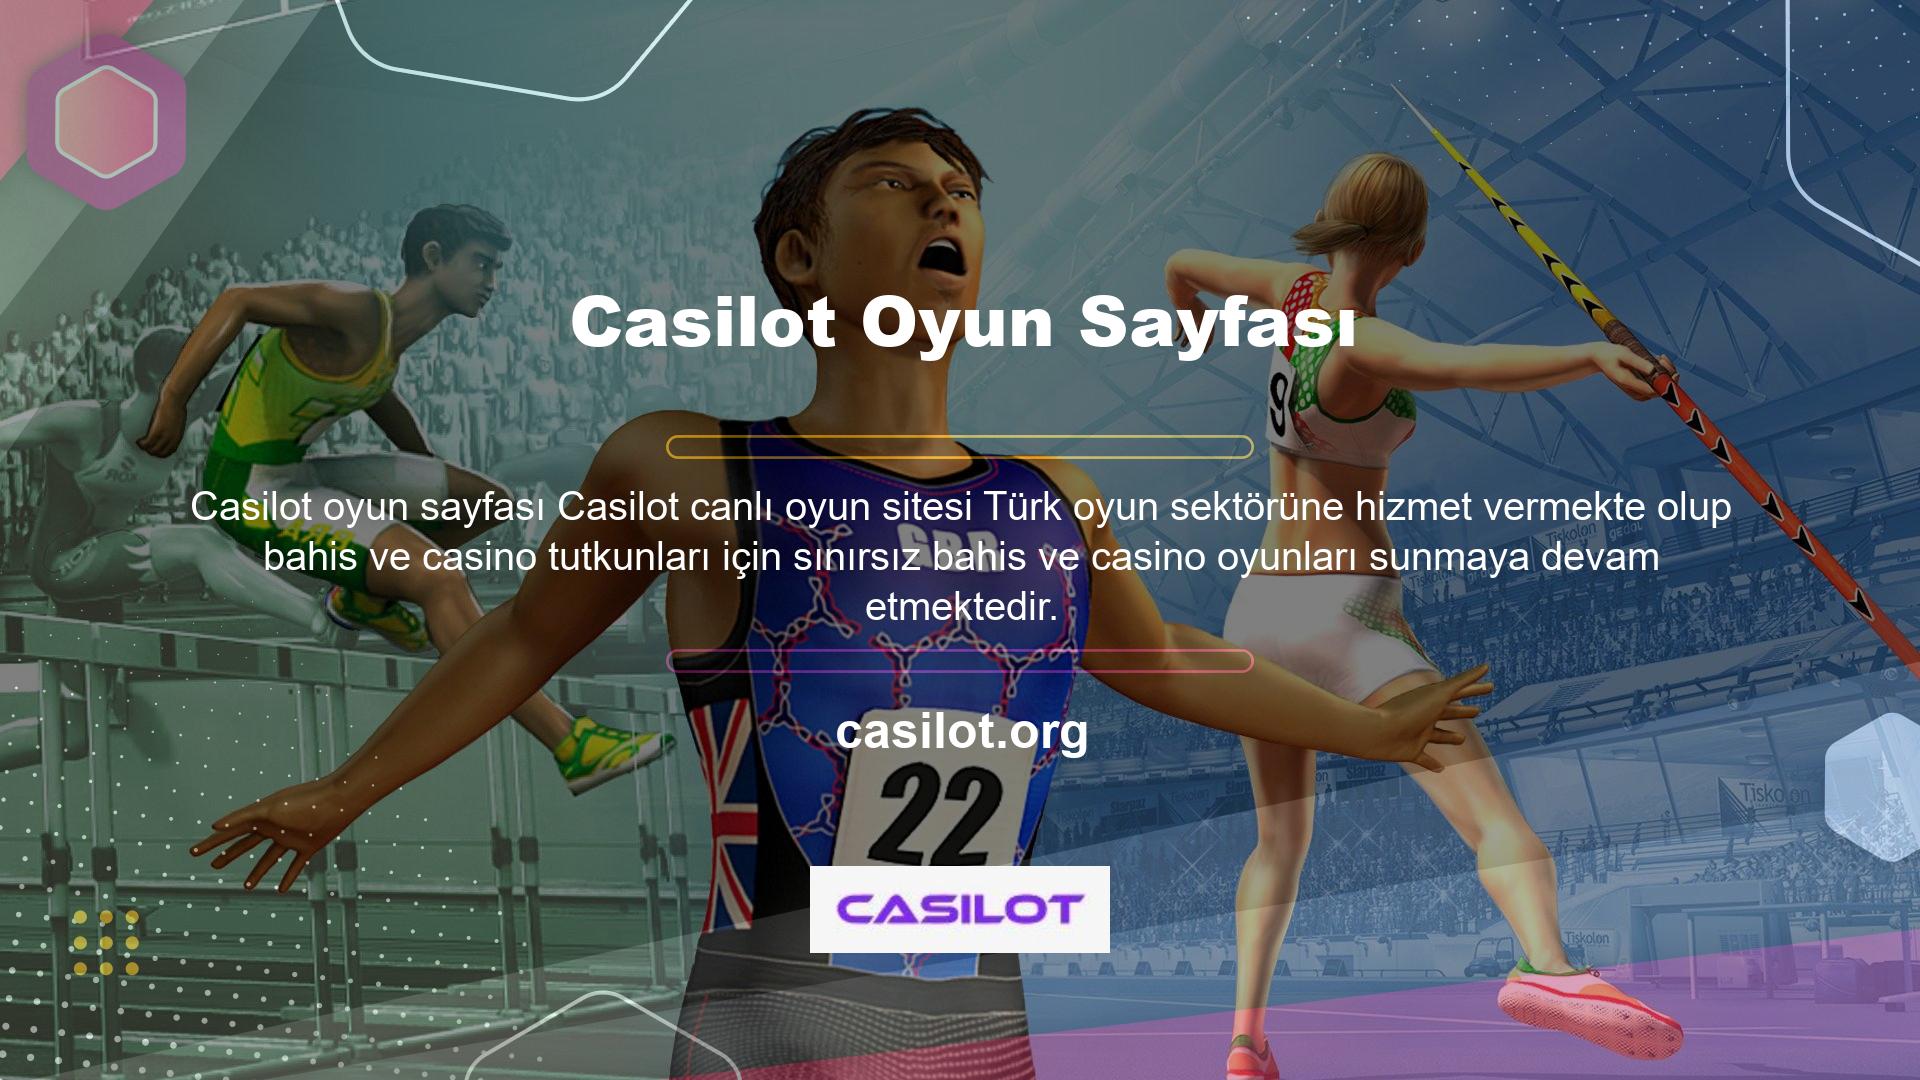 Türkiye'nin en iyi canlı bahis sitesi sloganıyla yola çıkan Casilot, kullanıcılarına eğlenceli ve kazançlı zamanlar vaat ediyor